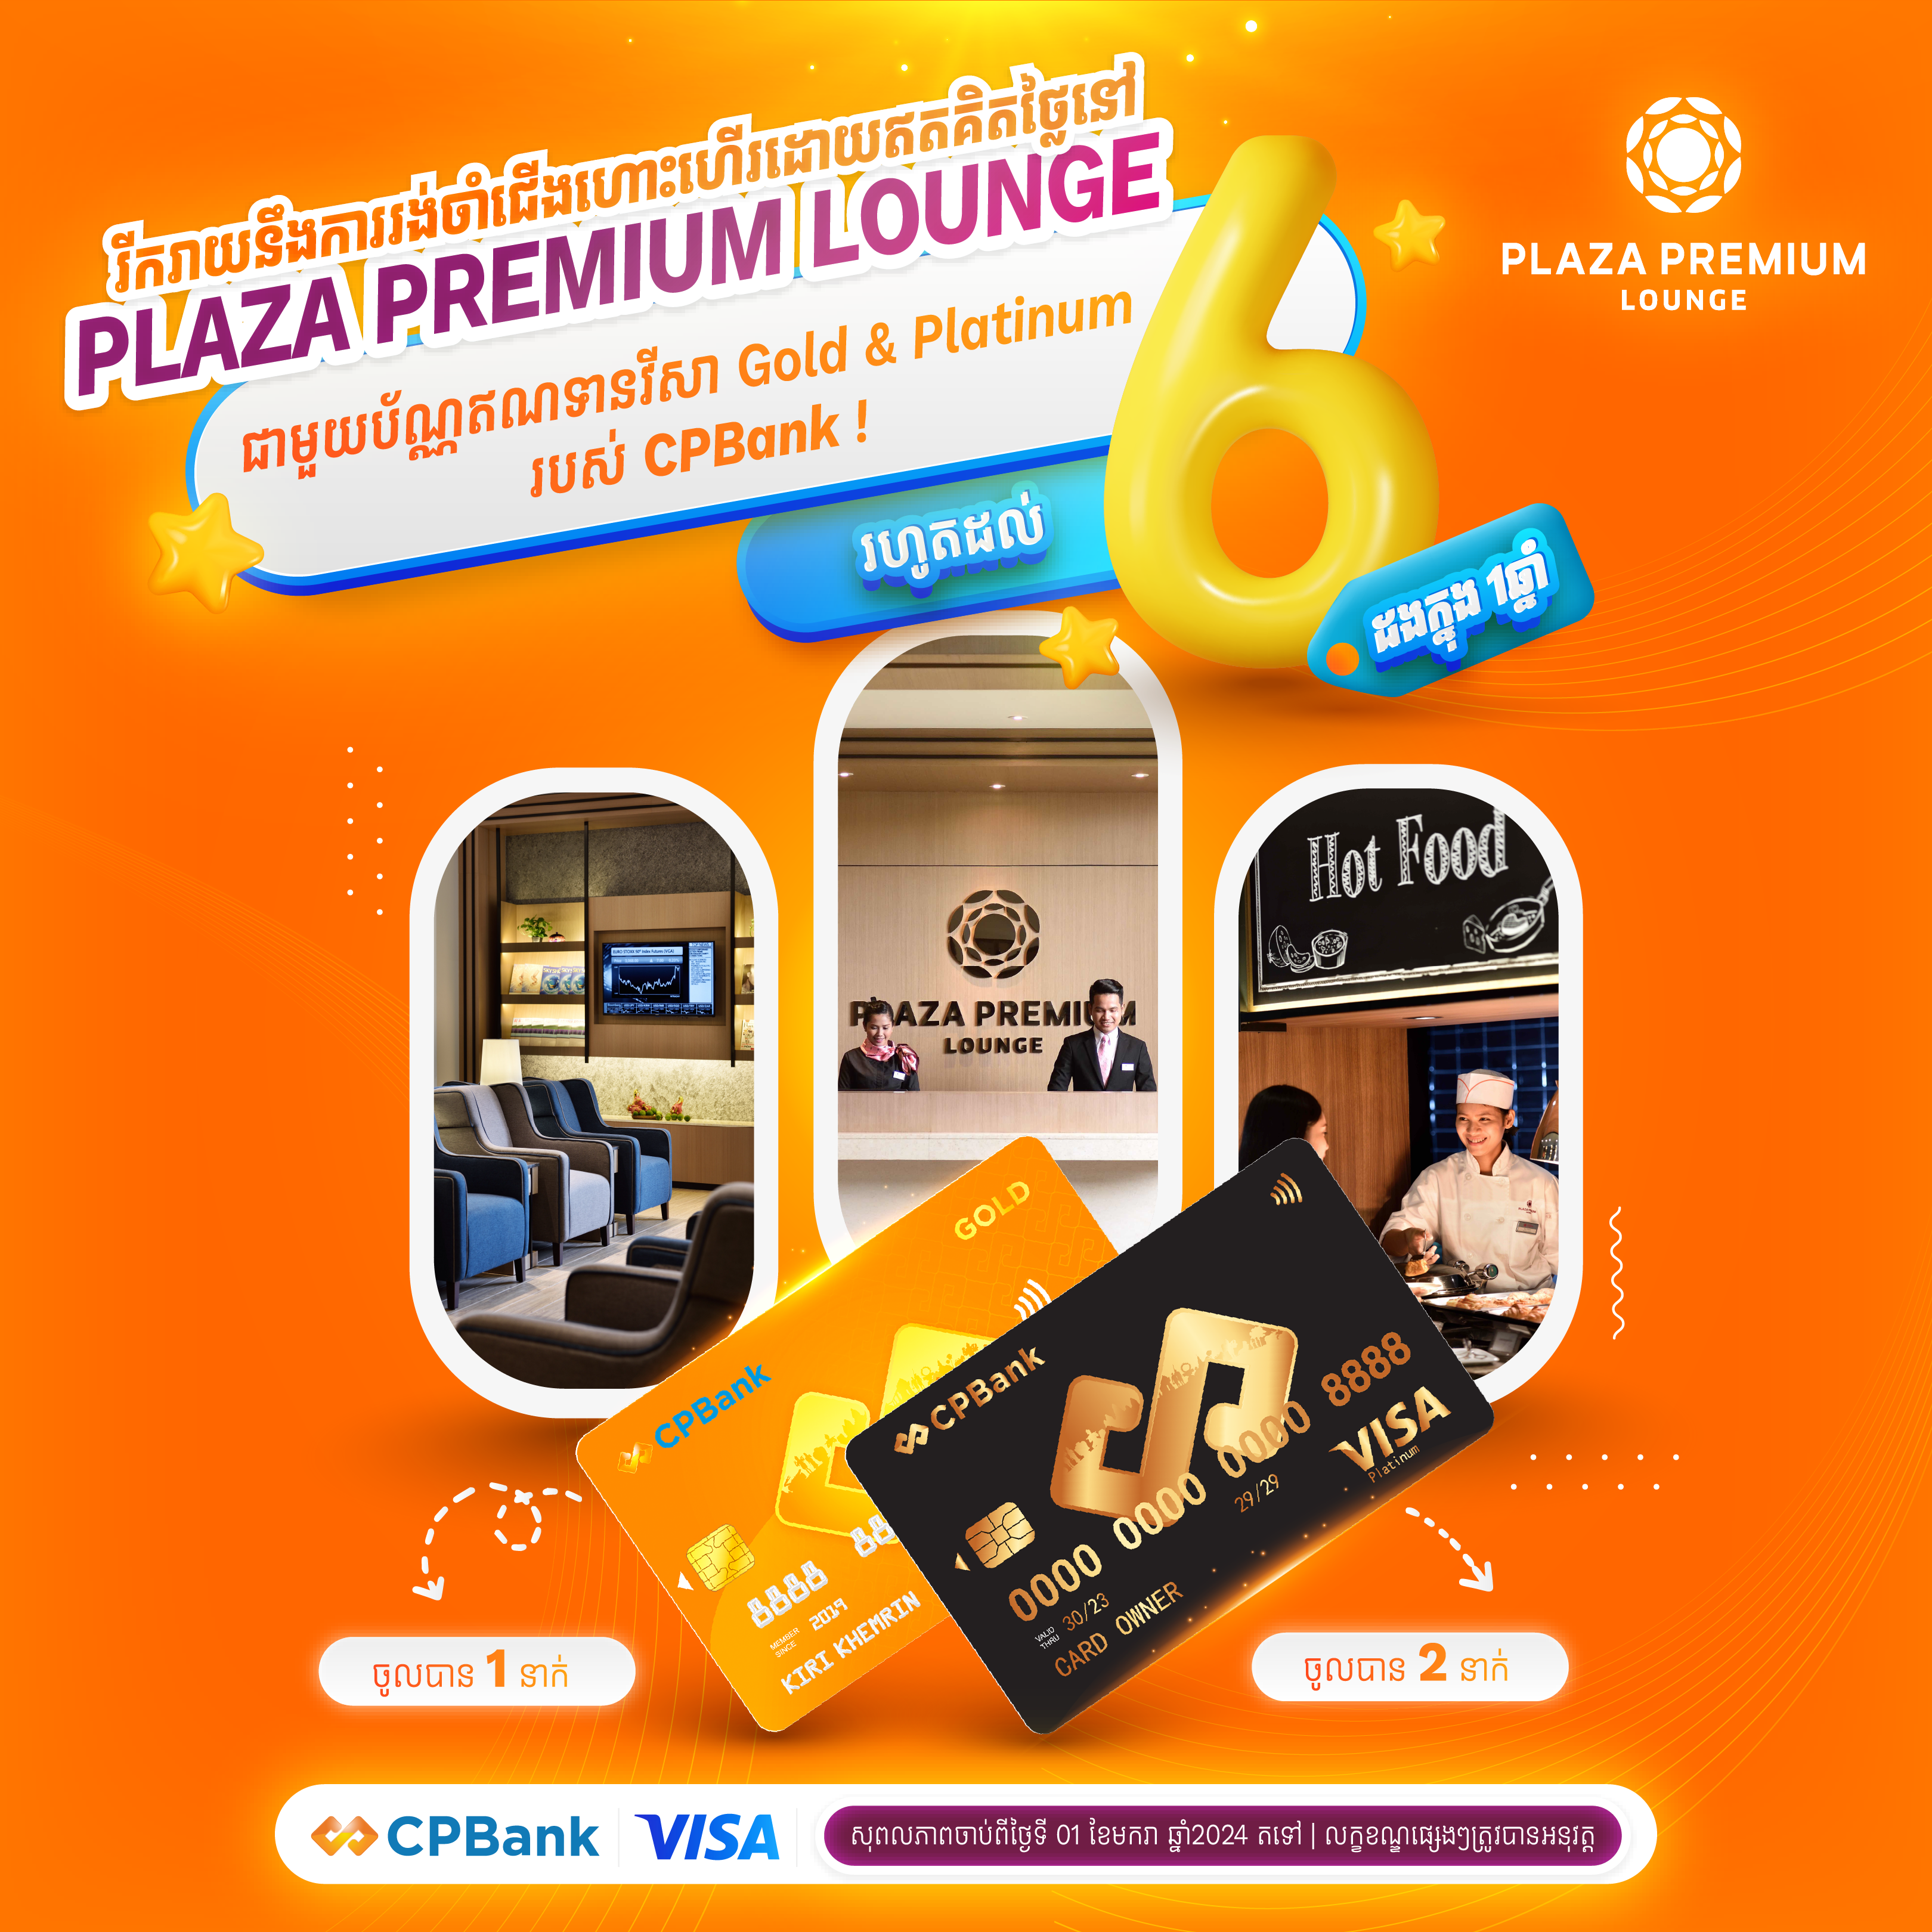 ទទួលបានបទពិសោធថ្មីបែបប្រណិត និងស៊ីវិល័យសម្រាប់ការធ្វើដំណើរ ជាមួយ Plaza Premium Lounge